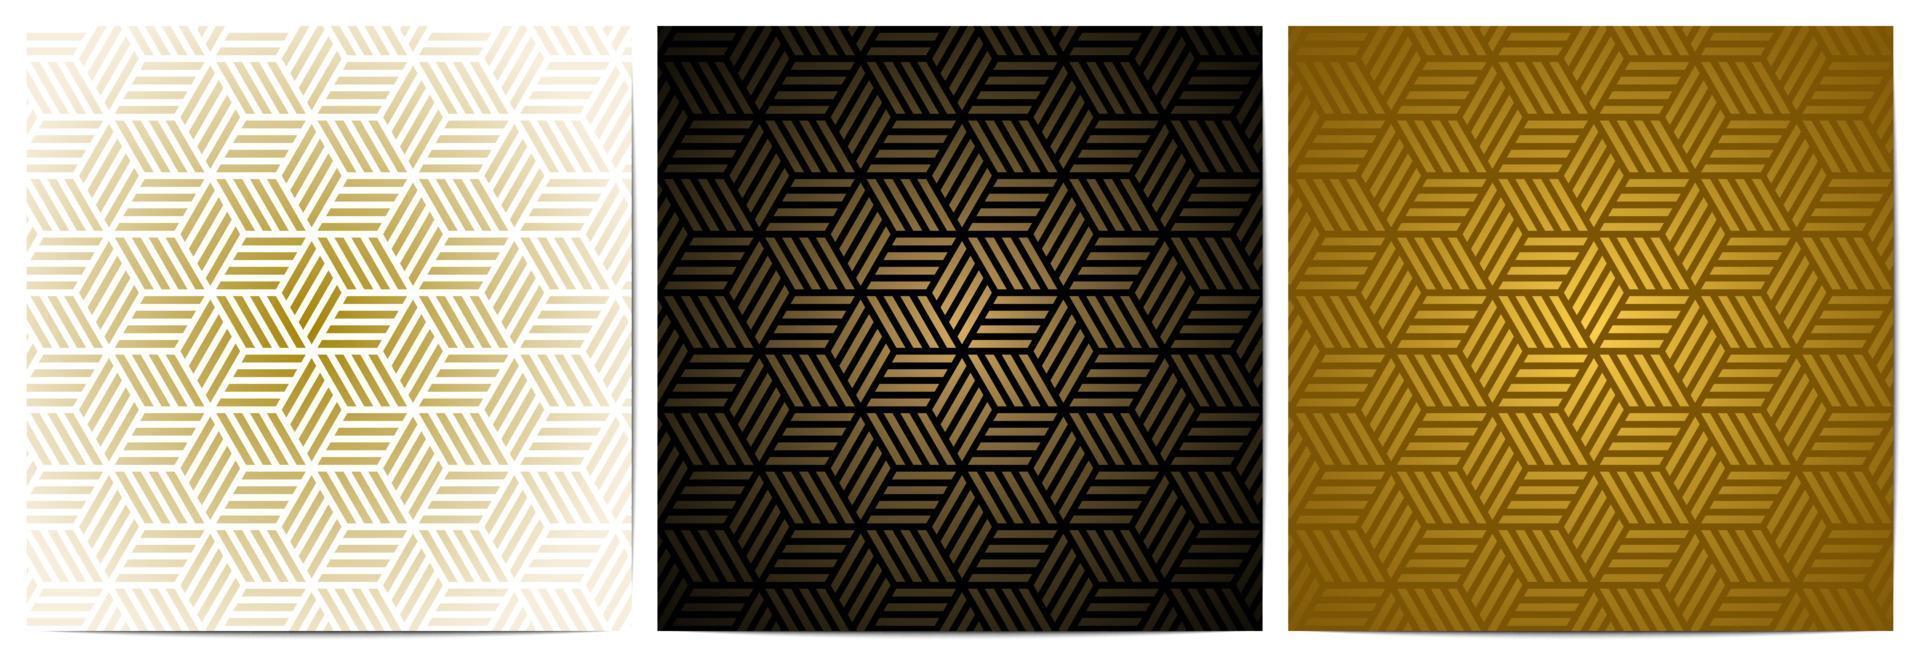 padrão geométrico com listras douradas e forma poligonal vetor